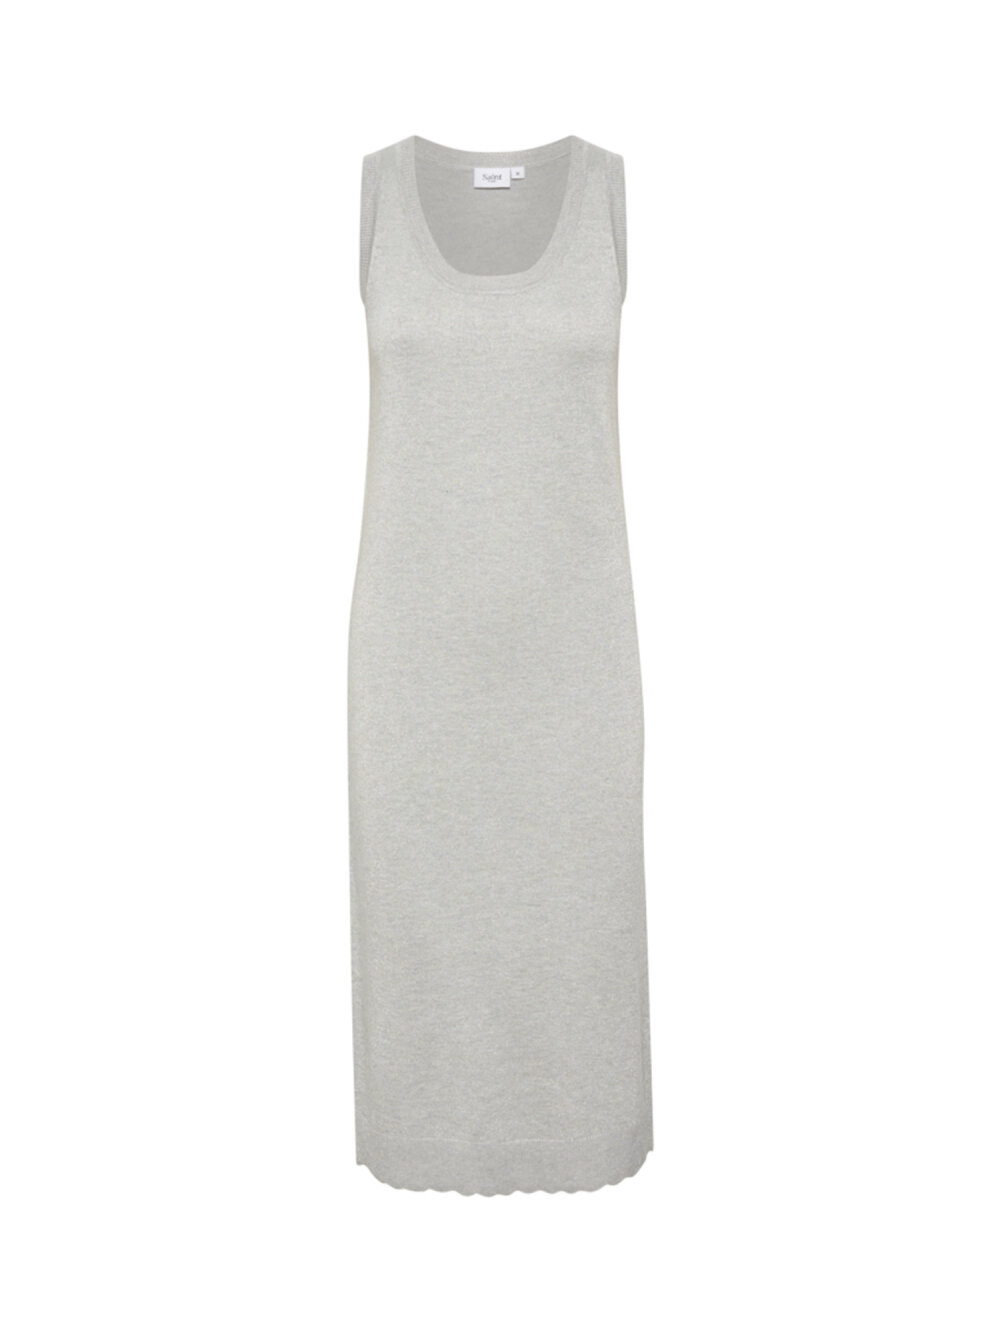 Saint Tropez - MilaSZ Shimmer Long Dress